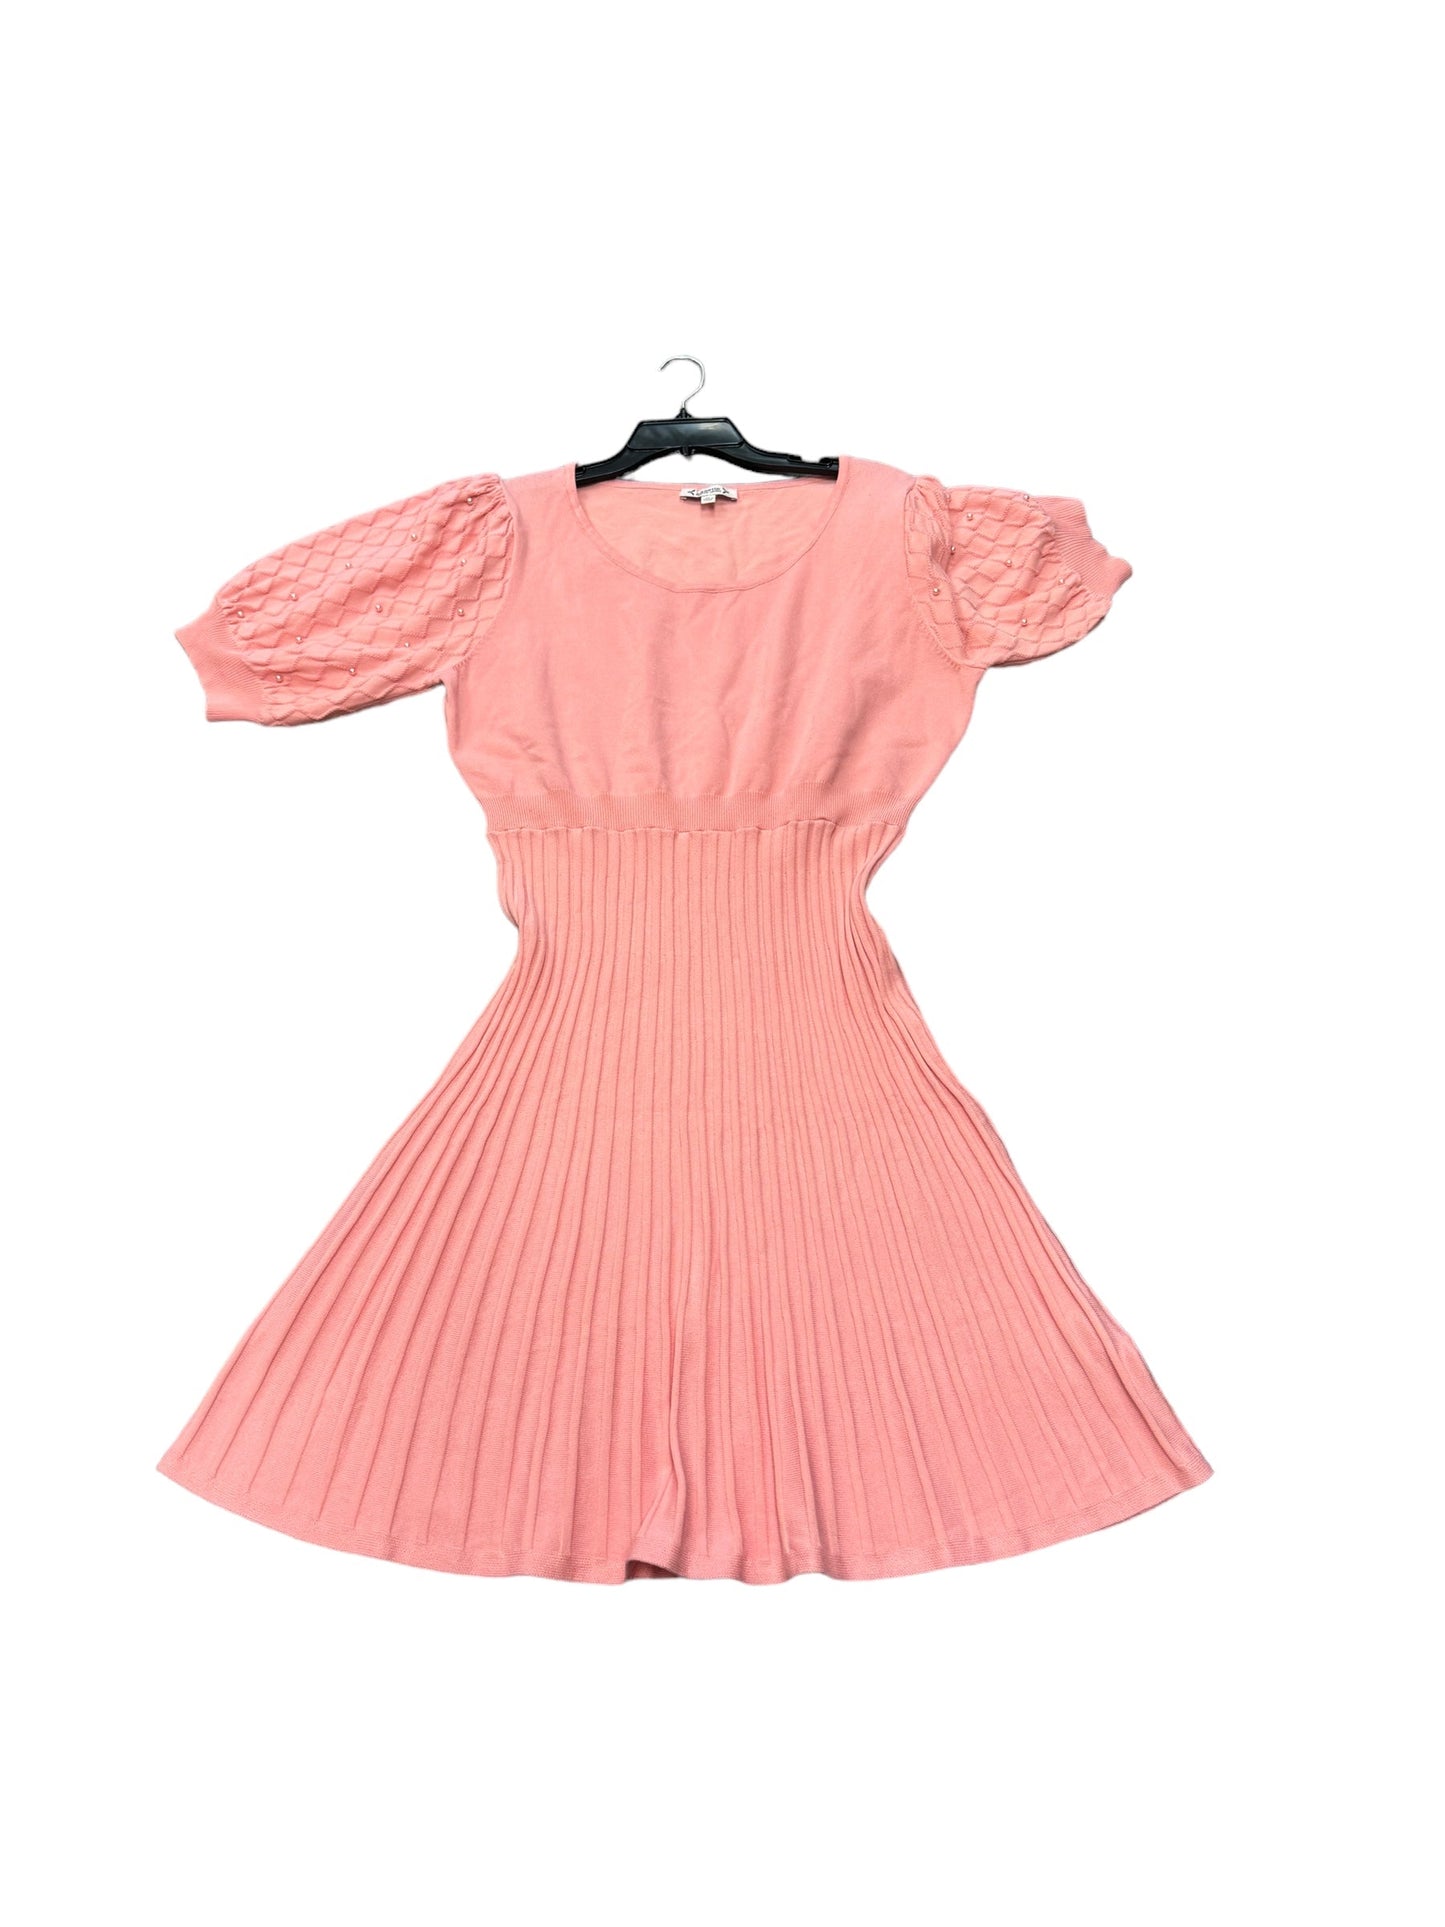 Dress Casual Midi By Nanette By Nanette Lepore  Size: 14